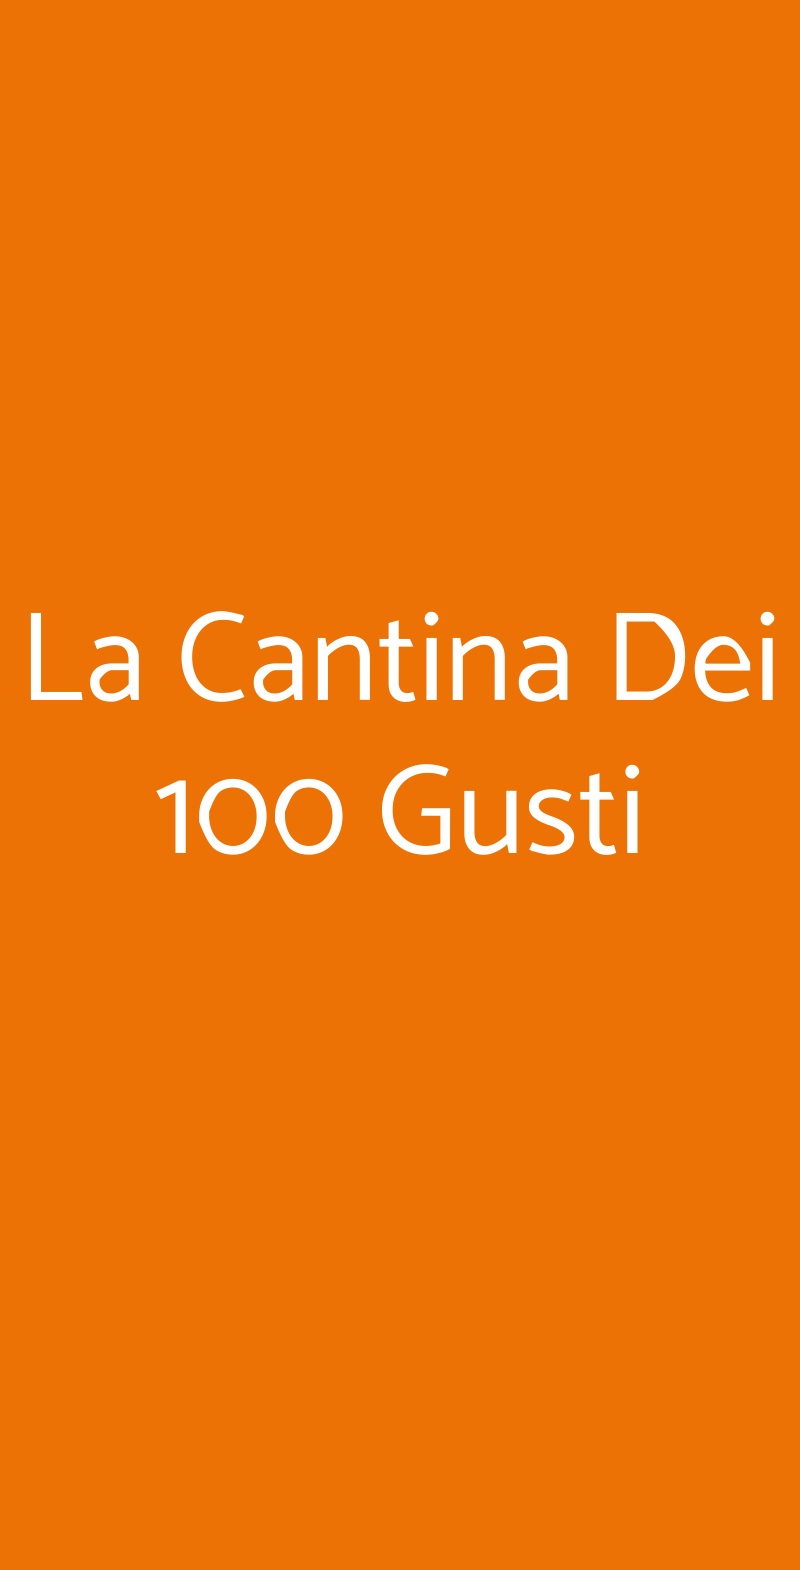 La Cantina Dei 100 Gusti Reggio Calabria menù 1 pagina